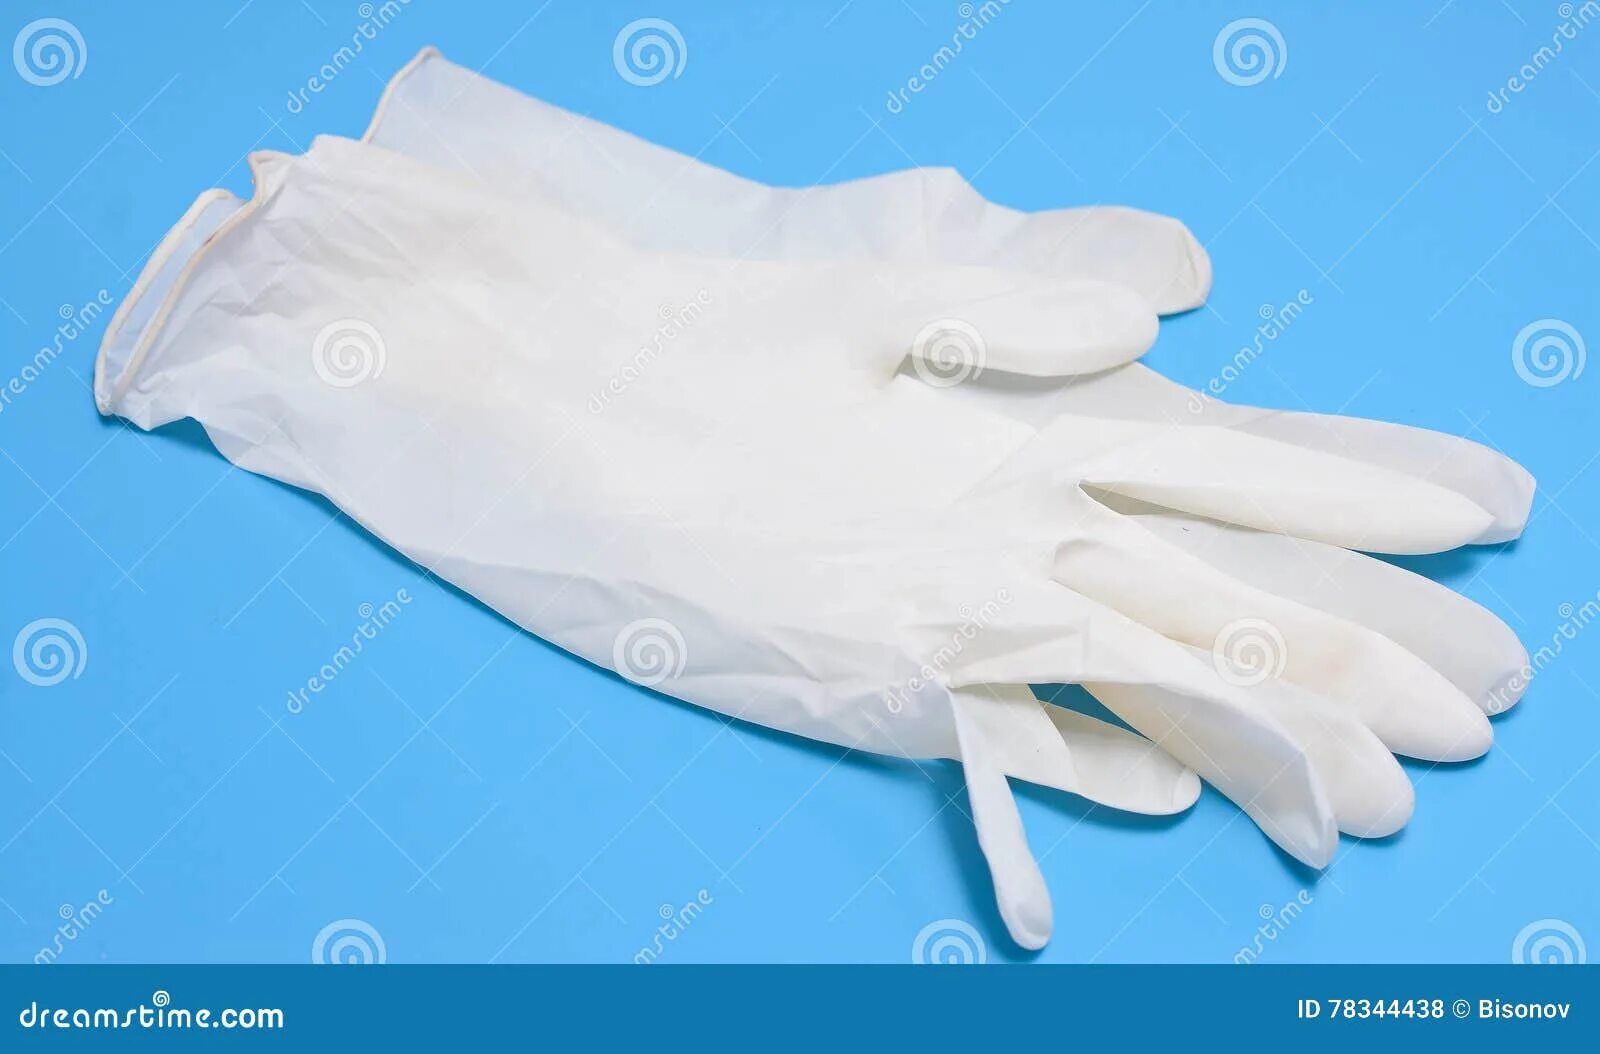 Перчатки медицинские белые. Медицинские перчатки лежат. Медицинские перчатки на столе. Медицинские перчатки лежат на столе. В мешке находится 20 белых перчаток